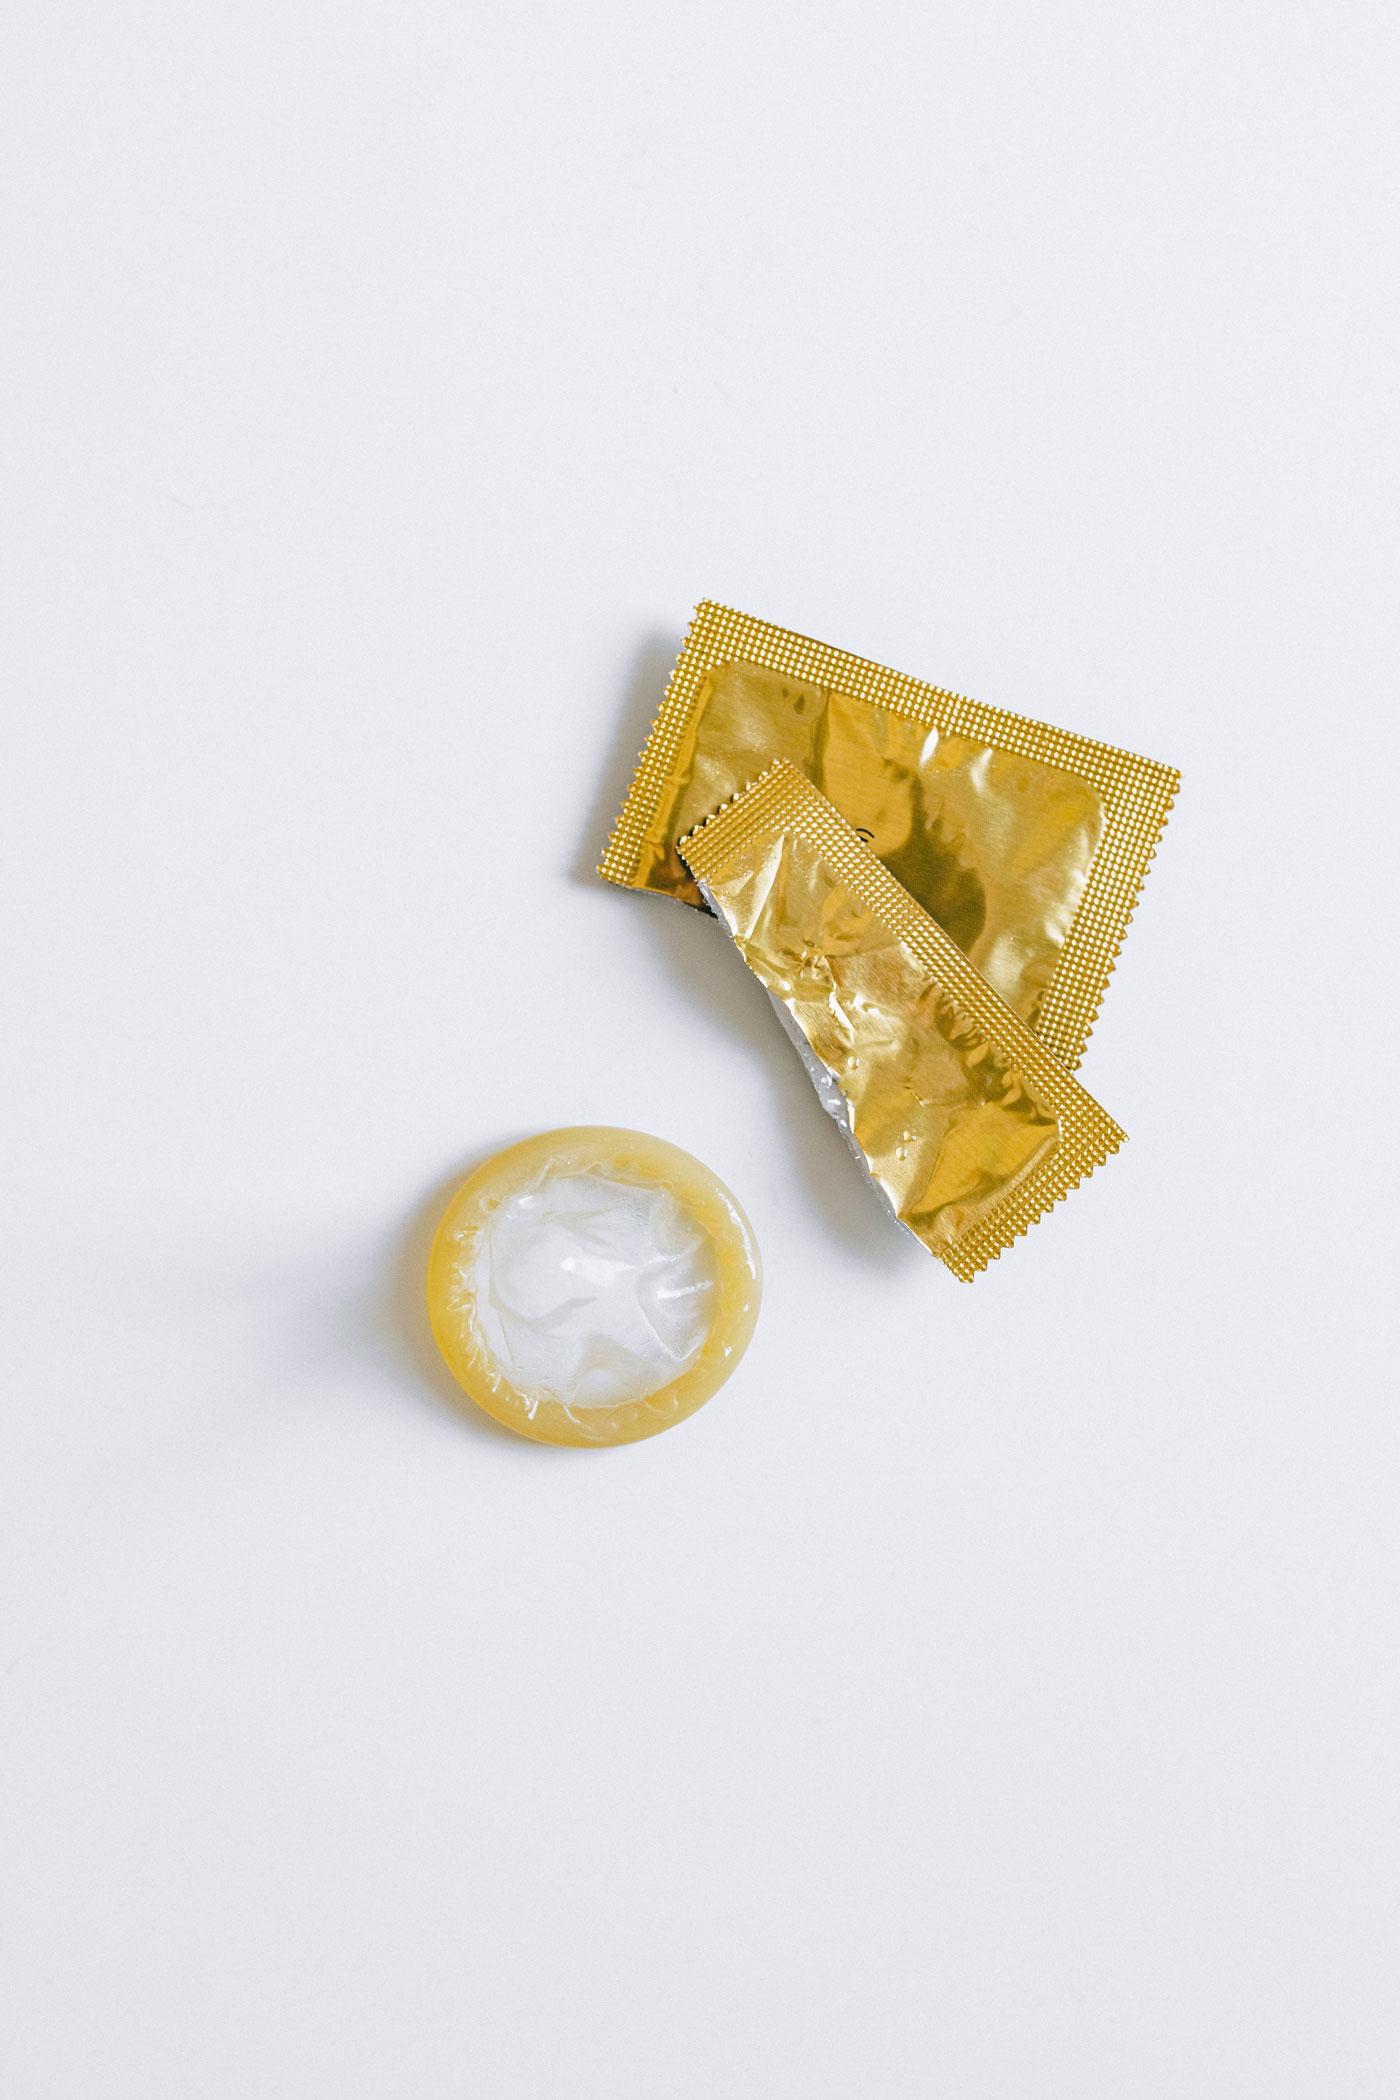 Foto eines Kondoms